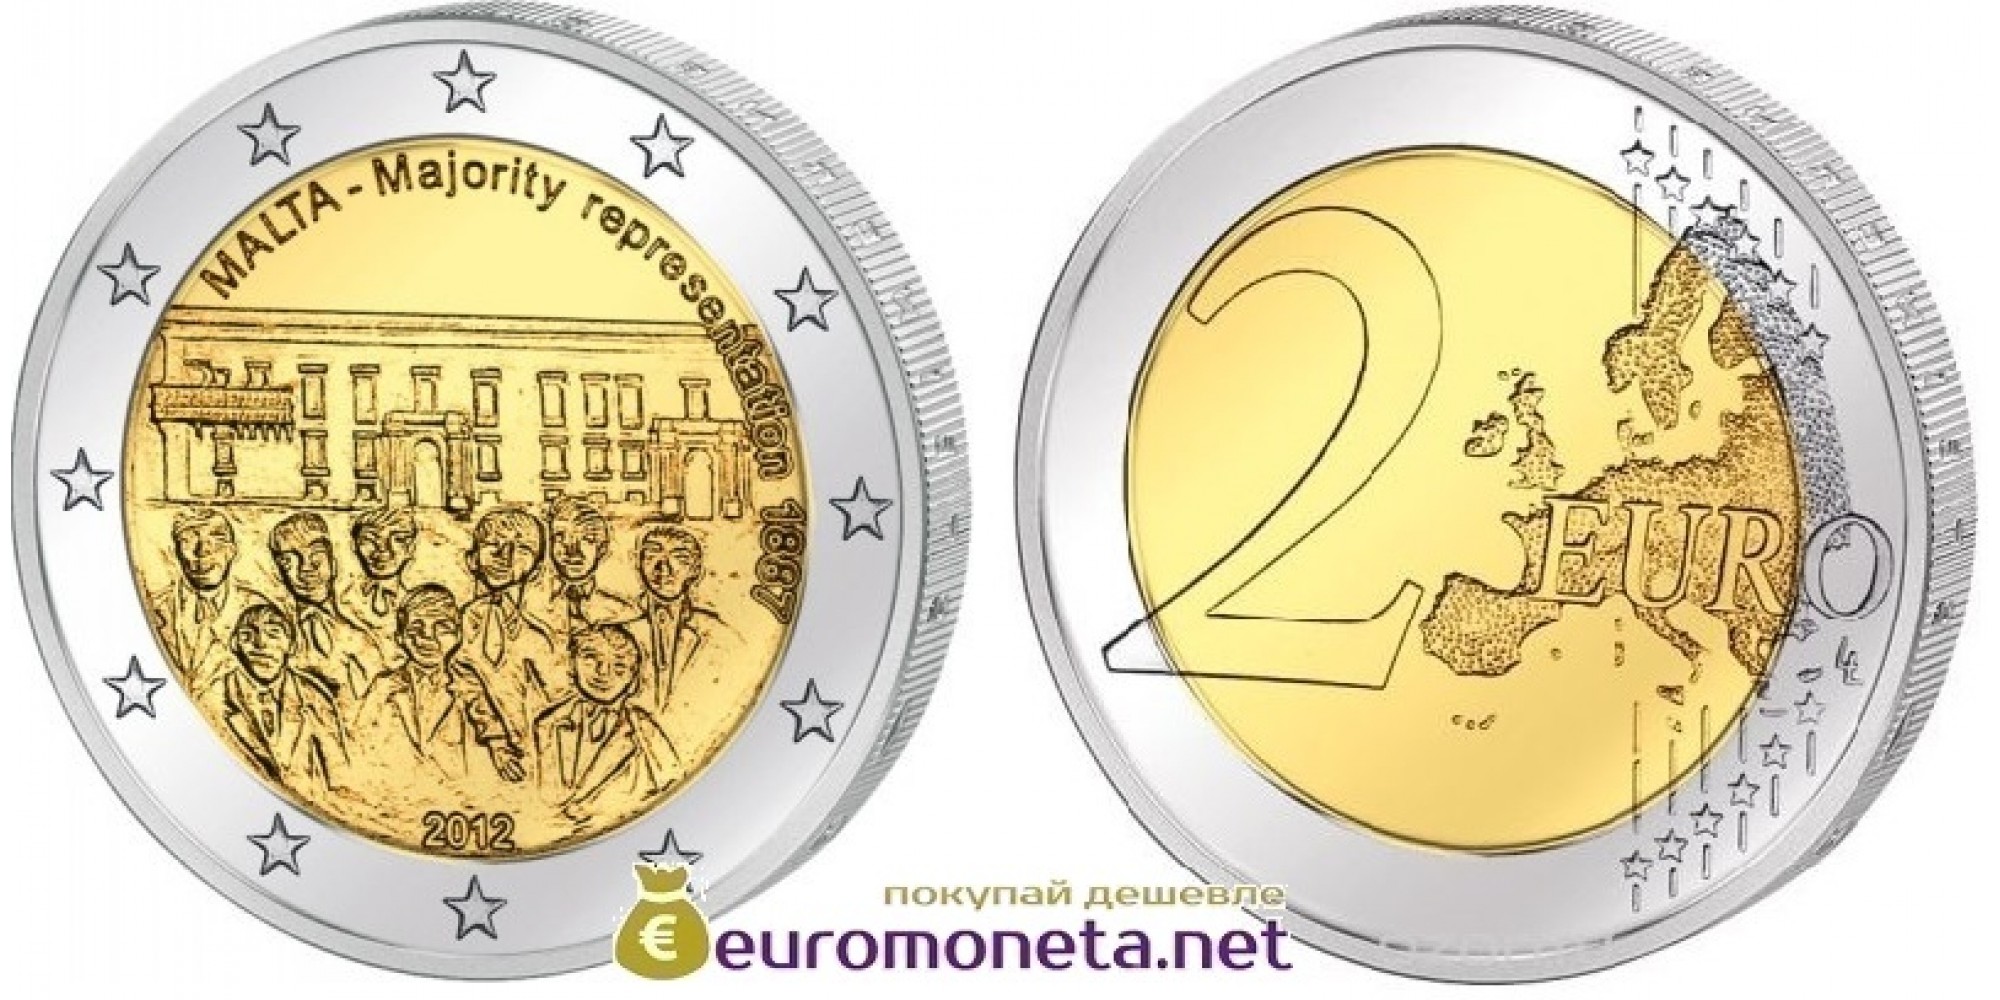 Мальта 2 евро 2012 год Совет большинства 1887 года, биметалл АЦ из ролла